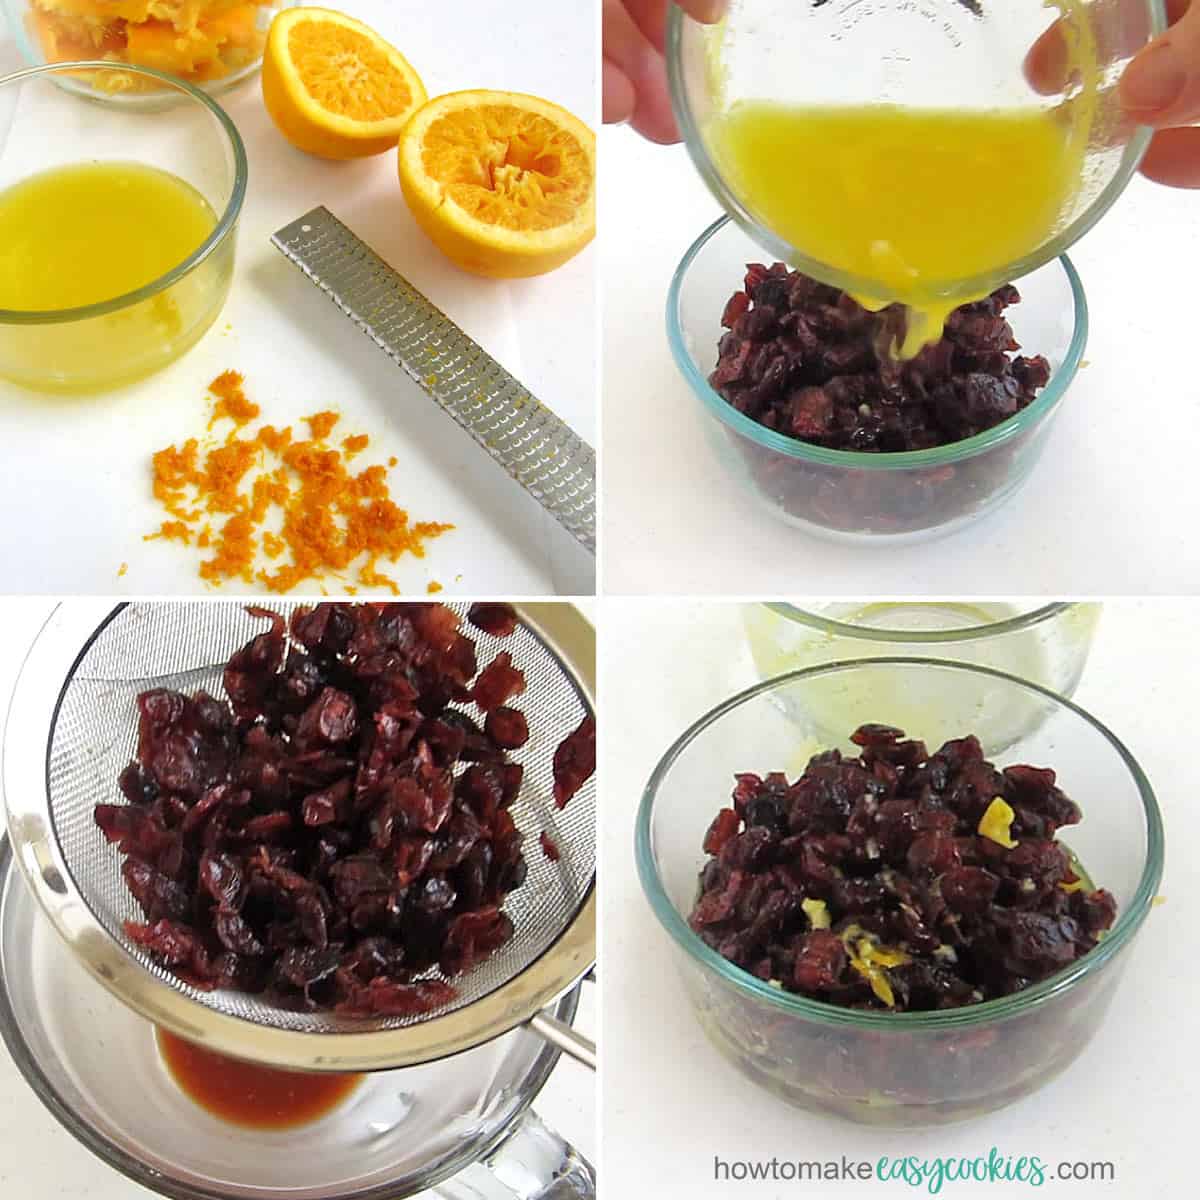 Make orange cranberries by soaking dried cranberries in orange juice.